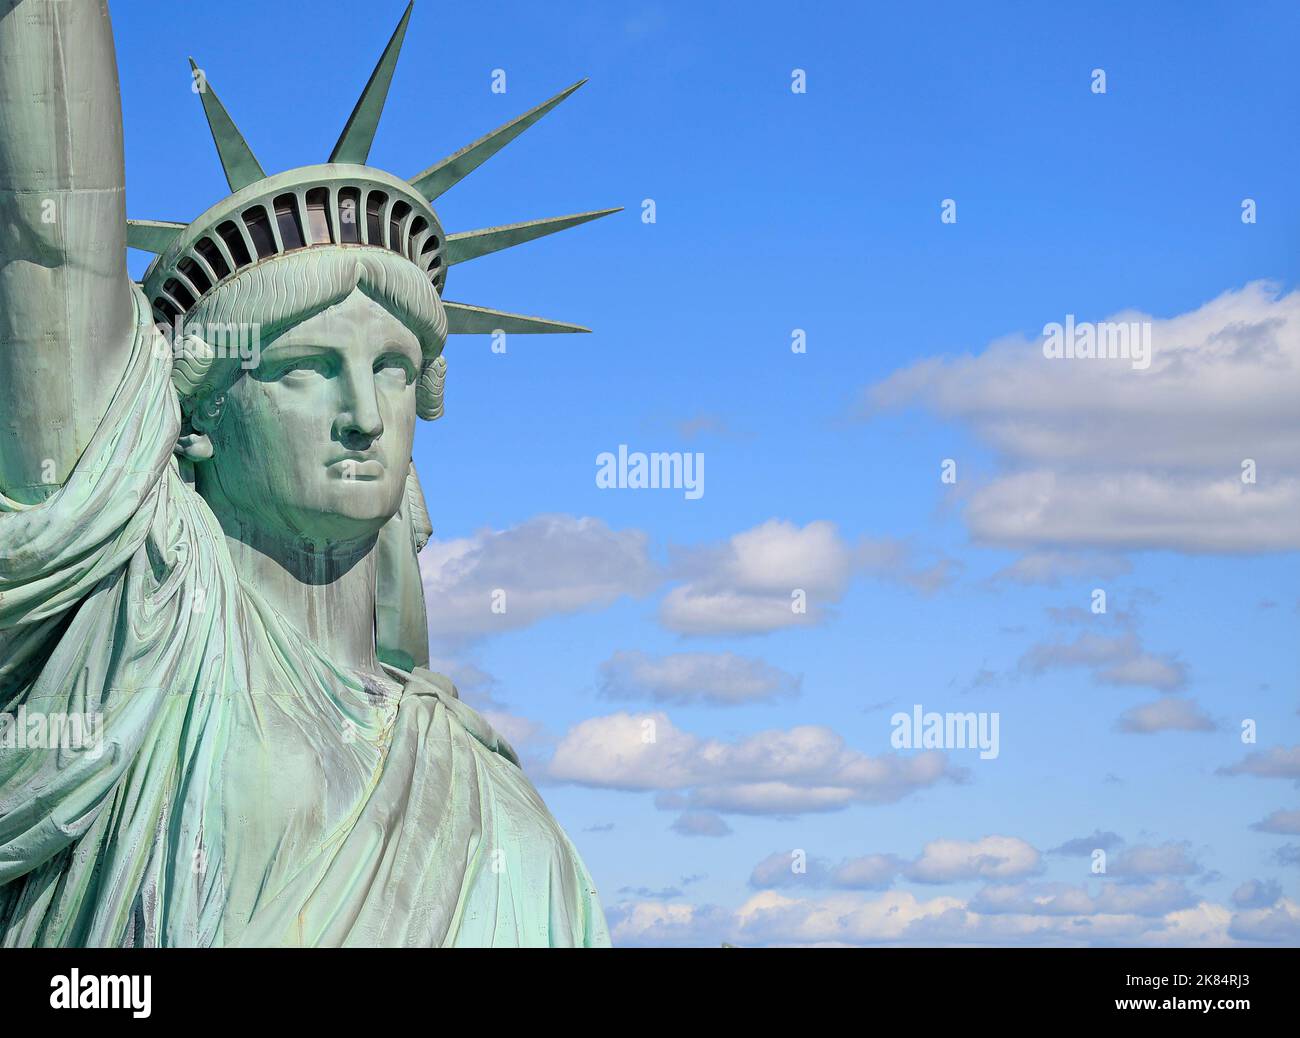 Tête et buste de la Statue de la liberté avec ciel bleu et nuages sur le fond, New York City, États-Unis Banque D'Images